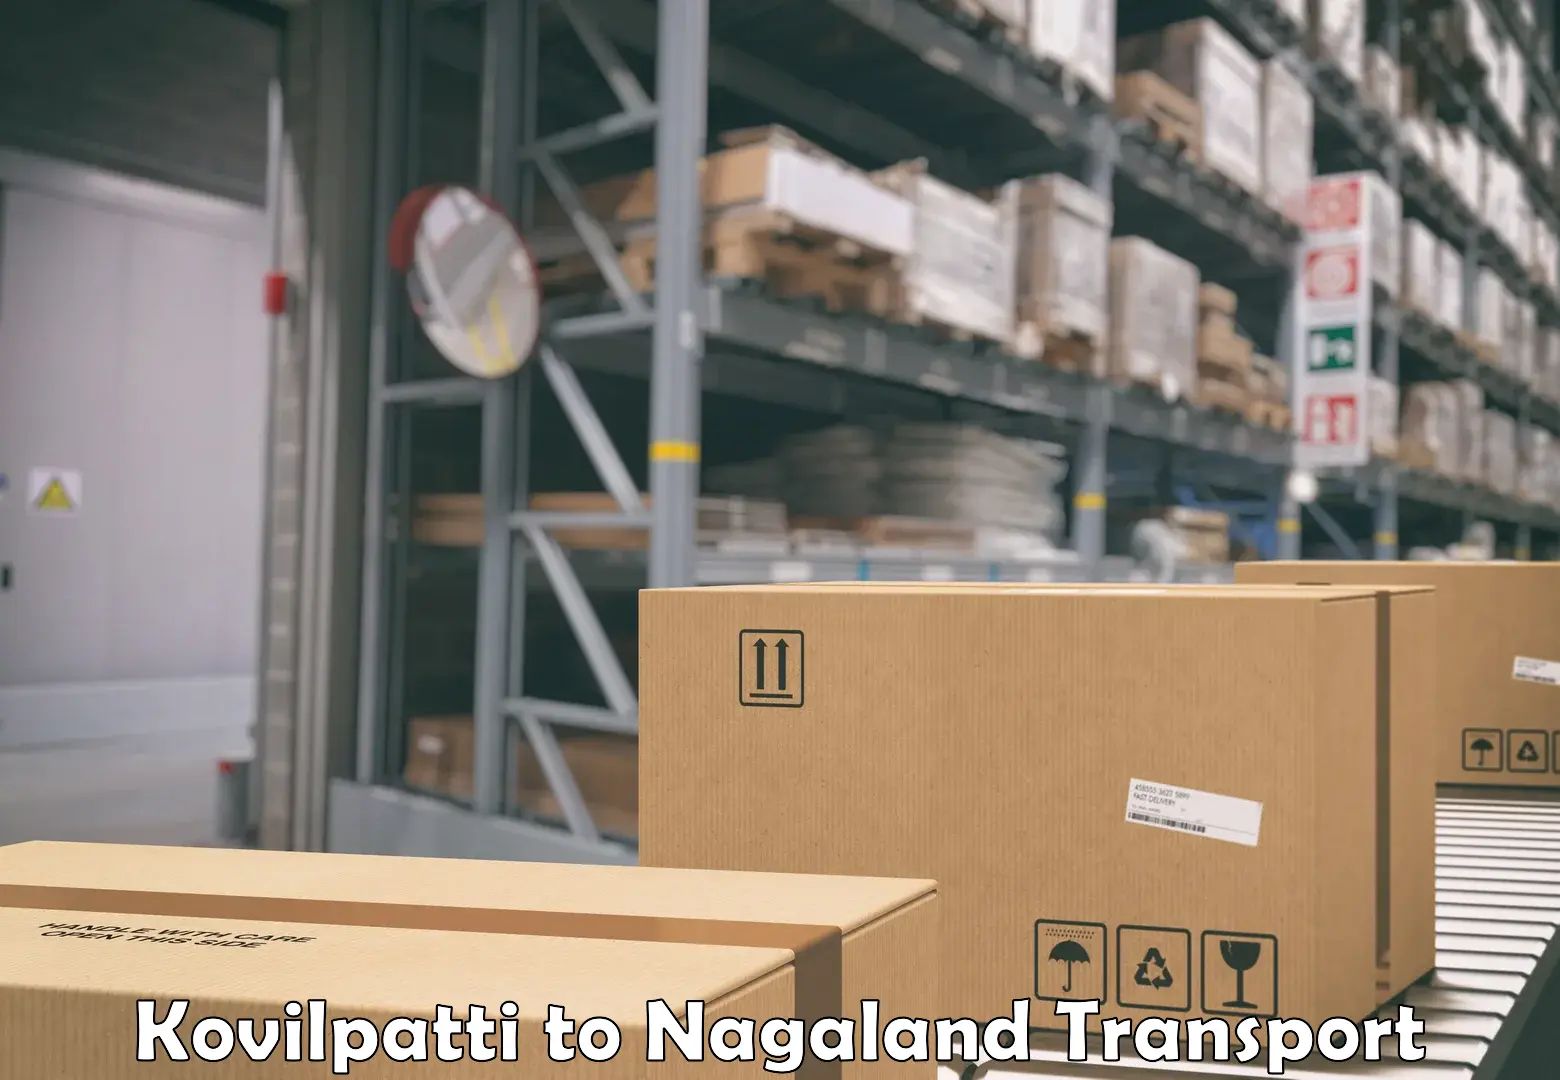 Interstate transport services Kovilpatti to NIT Nagaland